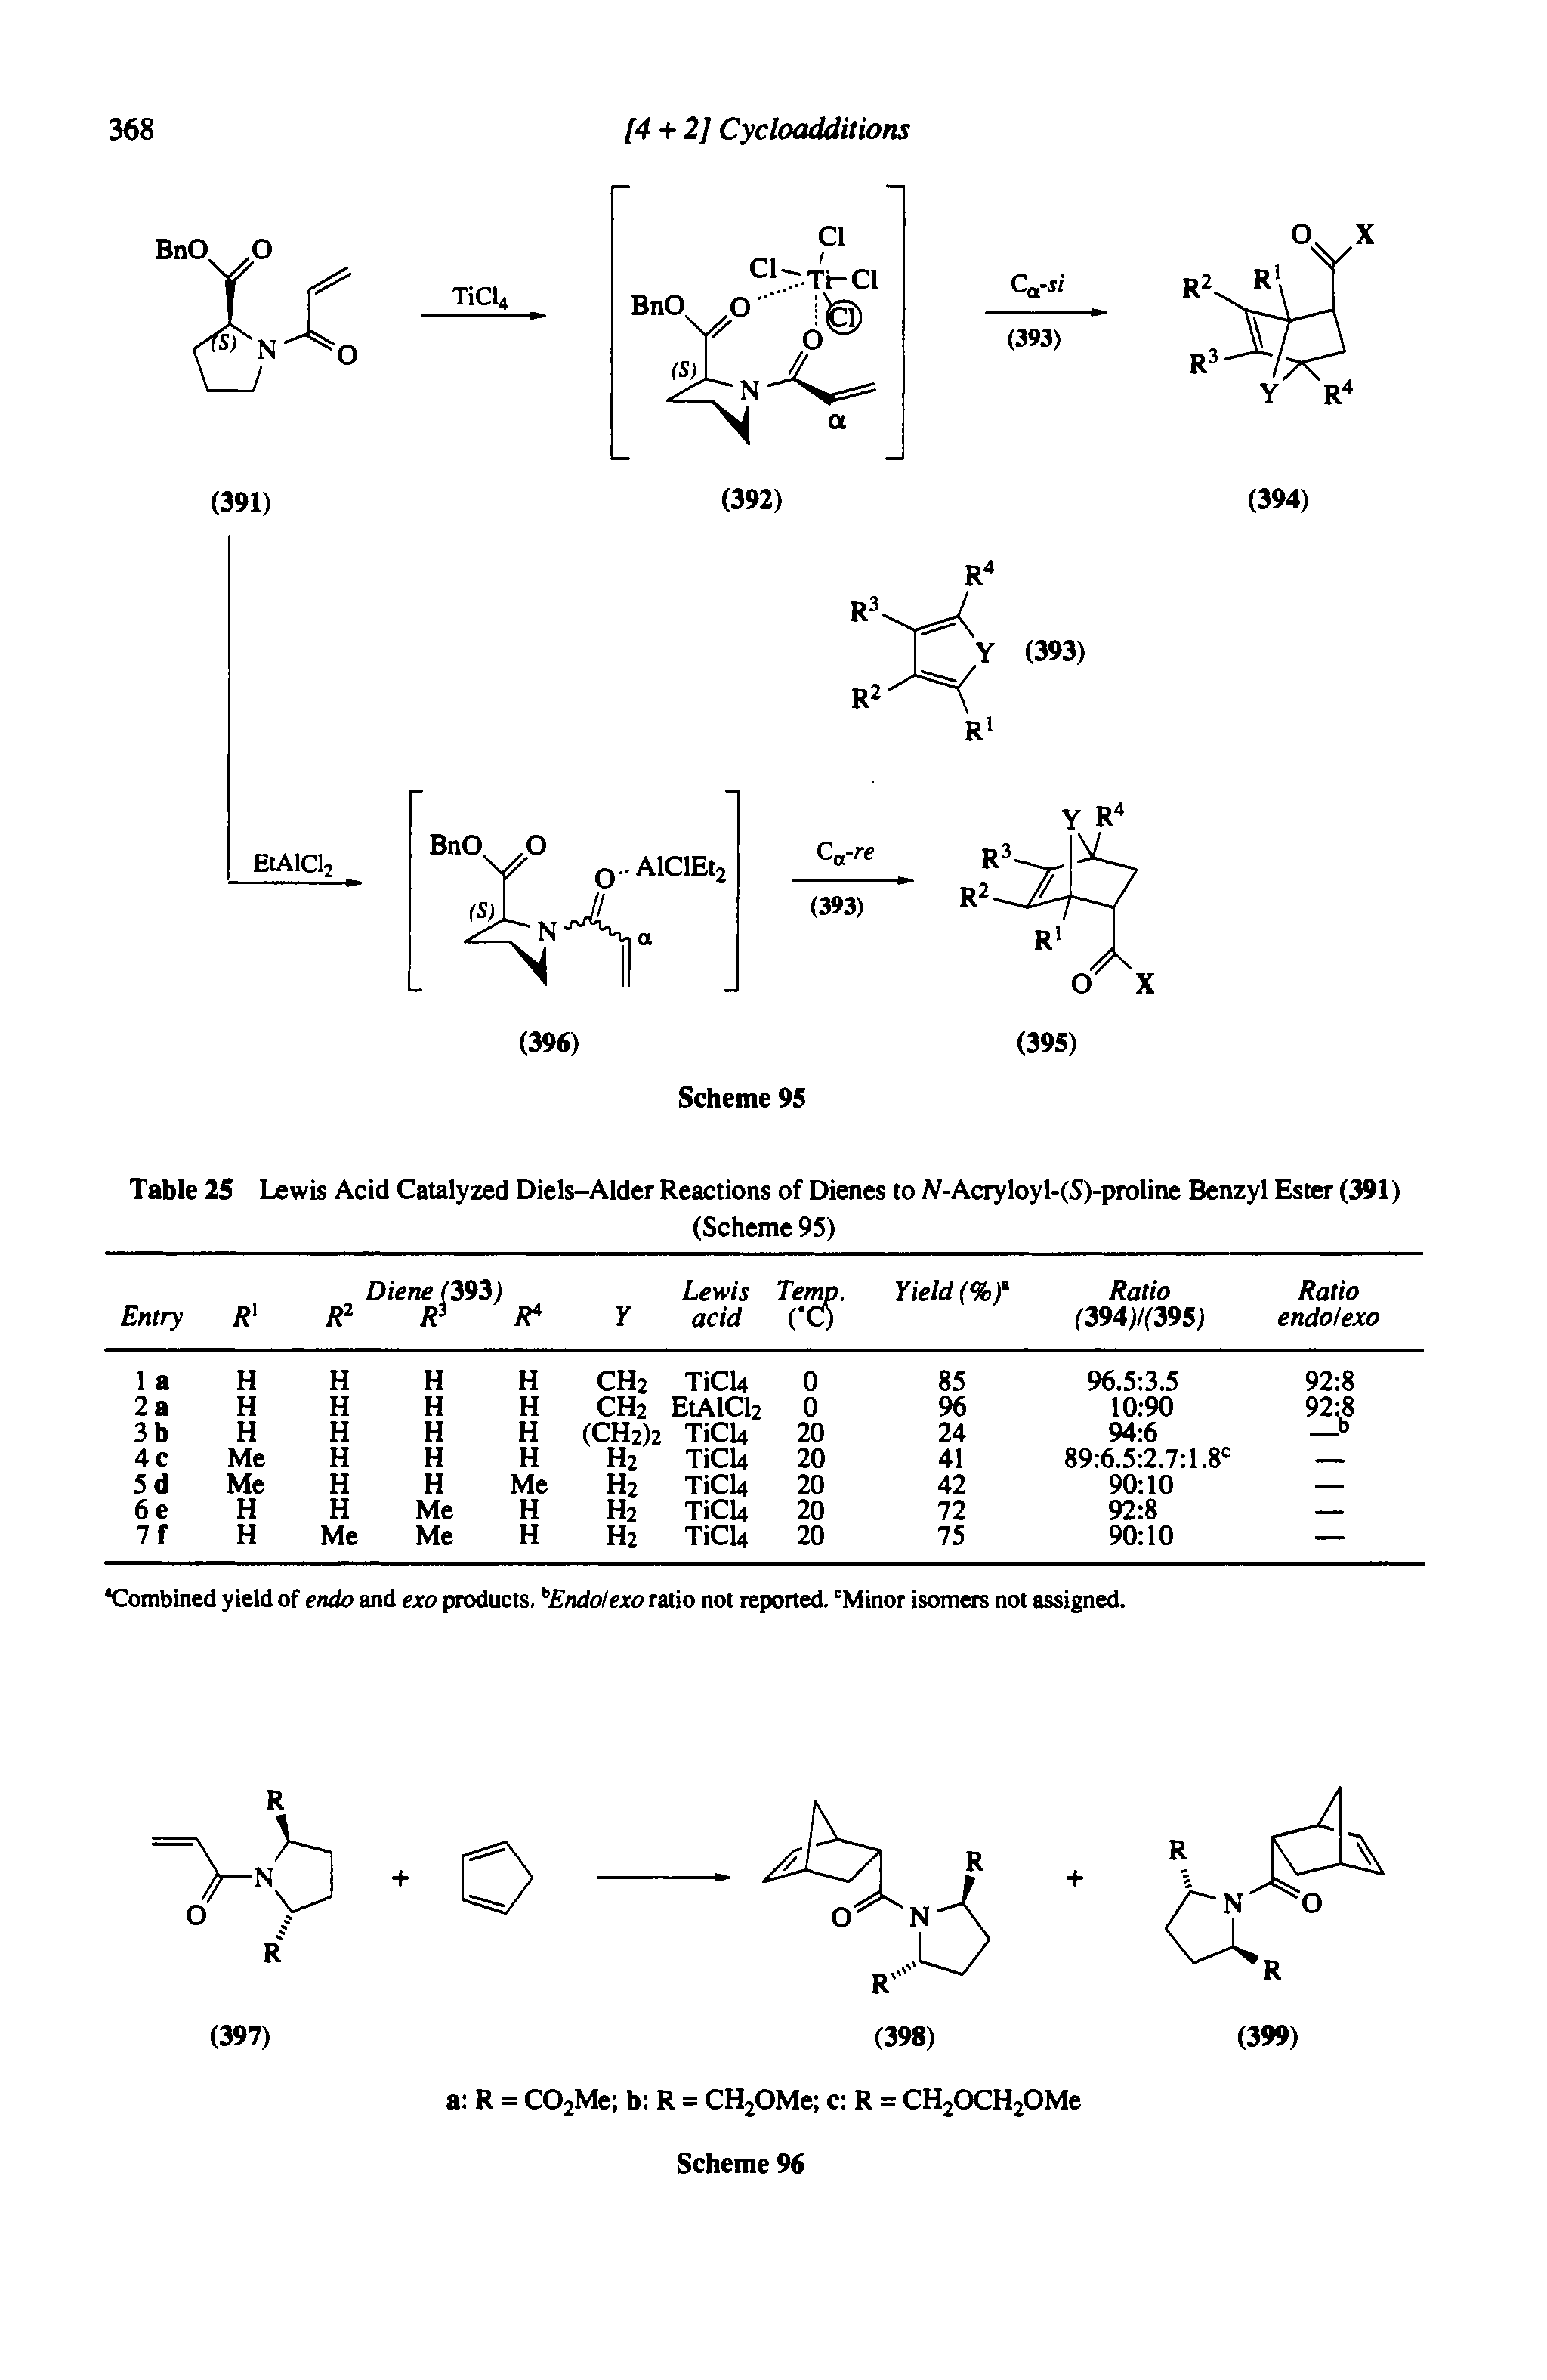 Table 25 Lewis Acid Catalyzed Diels-Alder Reactions of Dienes to N-Acryloyl-(S)-proline Benzyl Ester (391)...